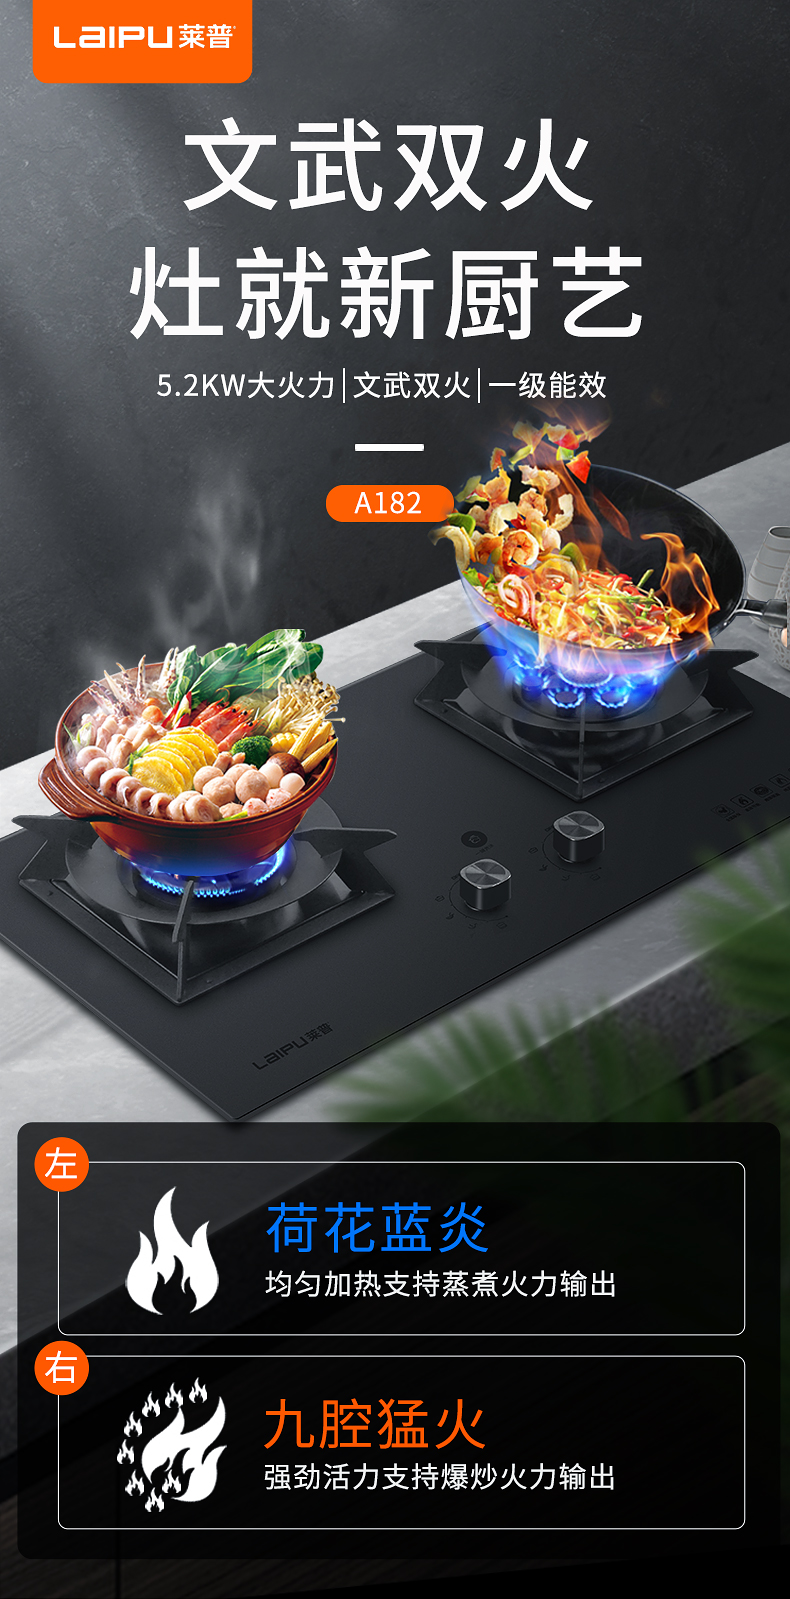 莱普燃气灶 ▏​文武双火，带给你烹饪的极致享受！